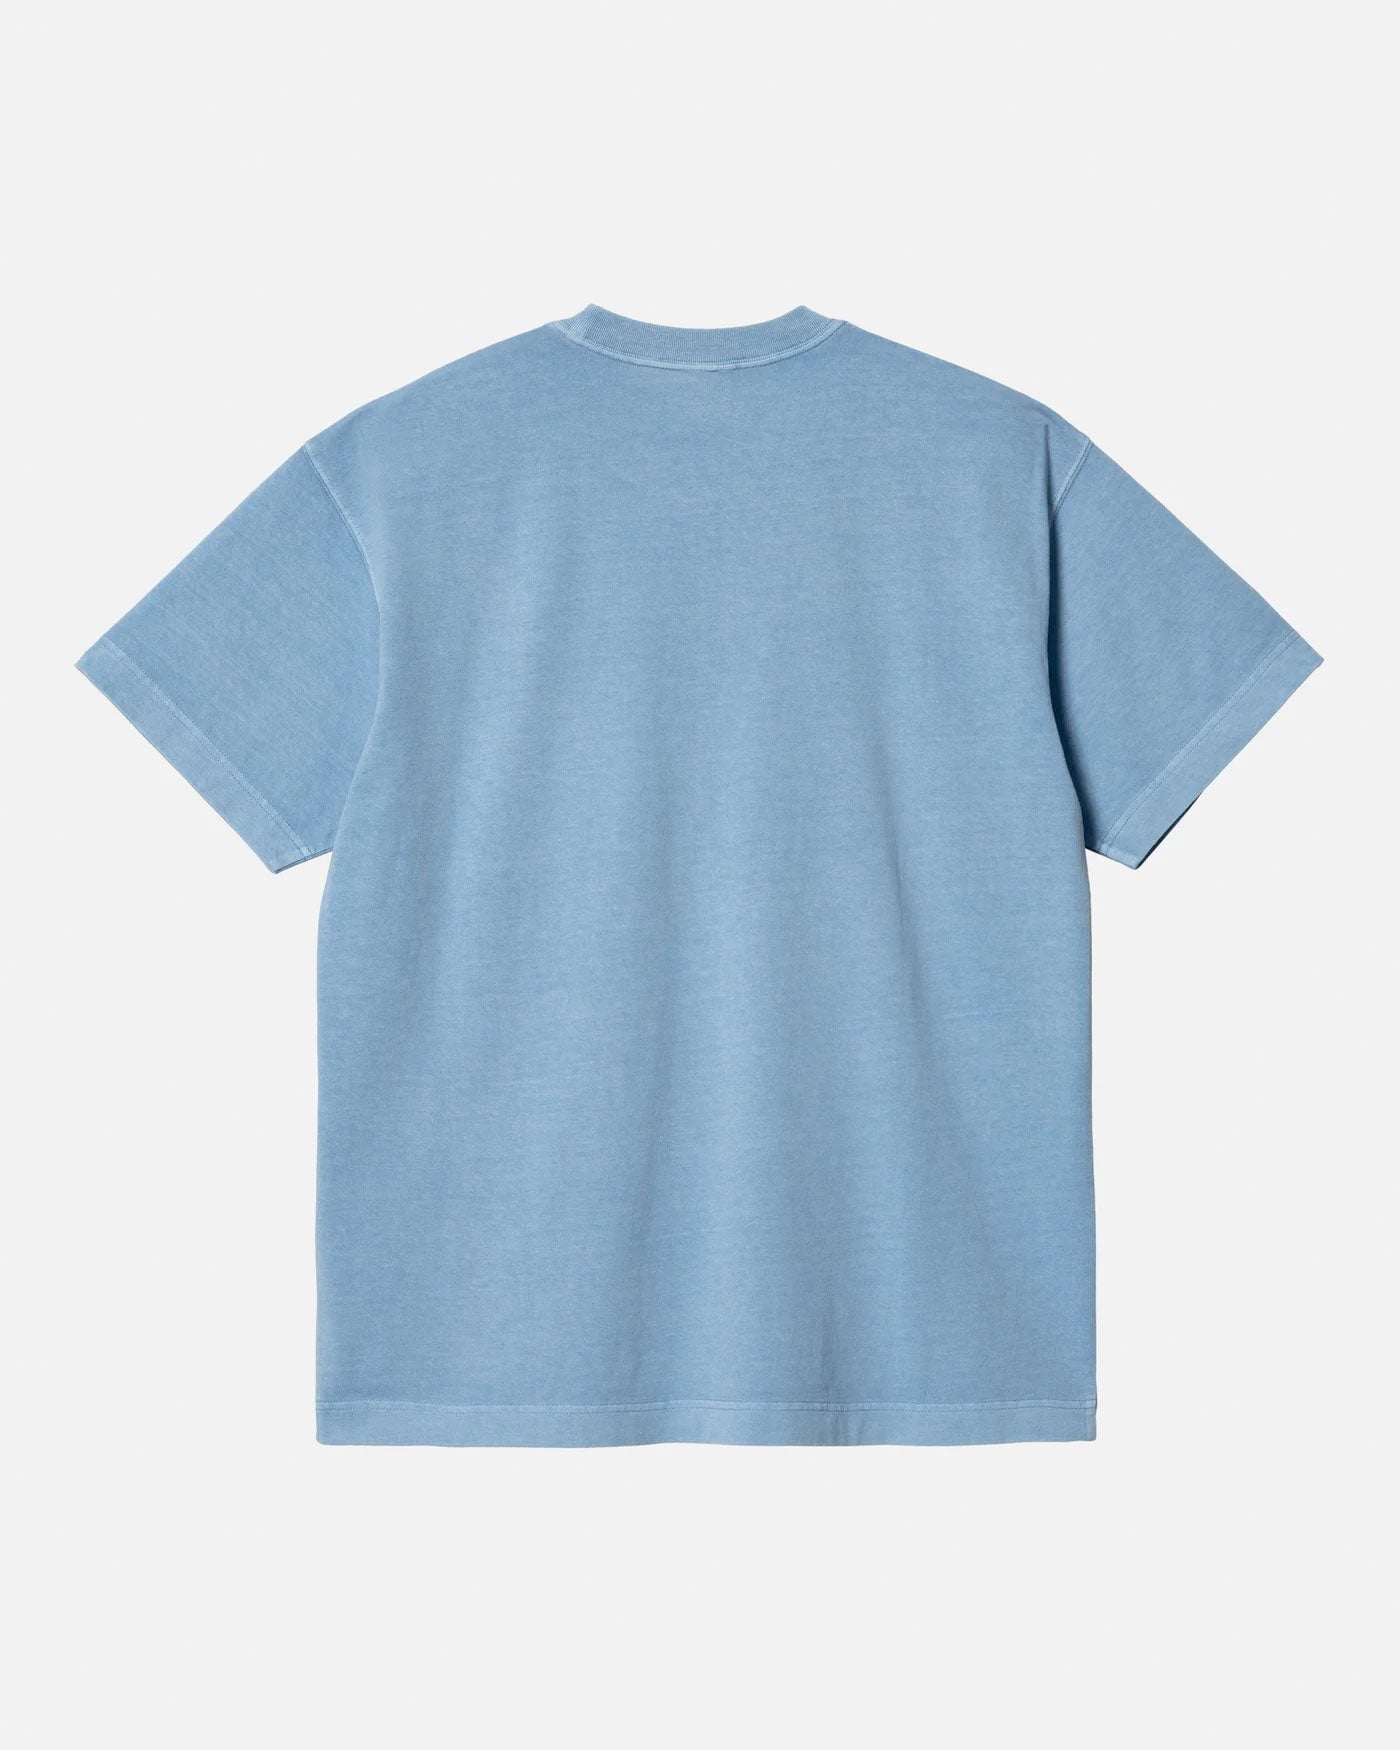 Carhartt WIP Nelson T-Shirt - Piscine (Garment Dyed) T-Shirt Carhartt WIP 